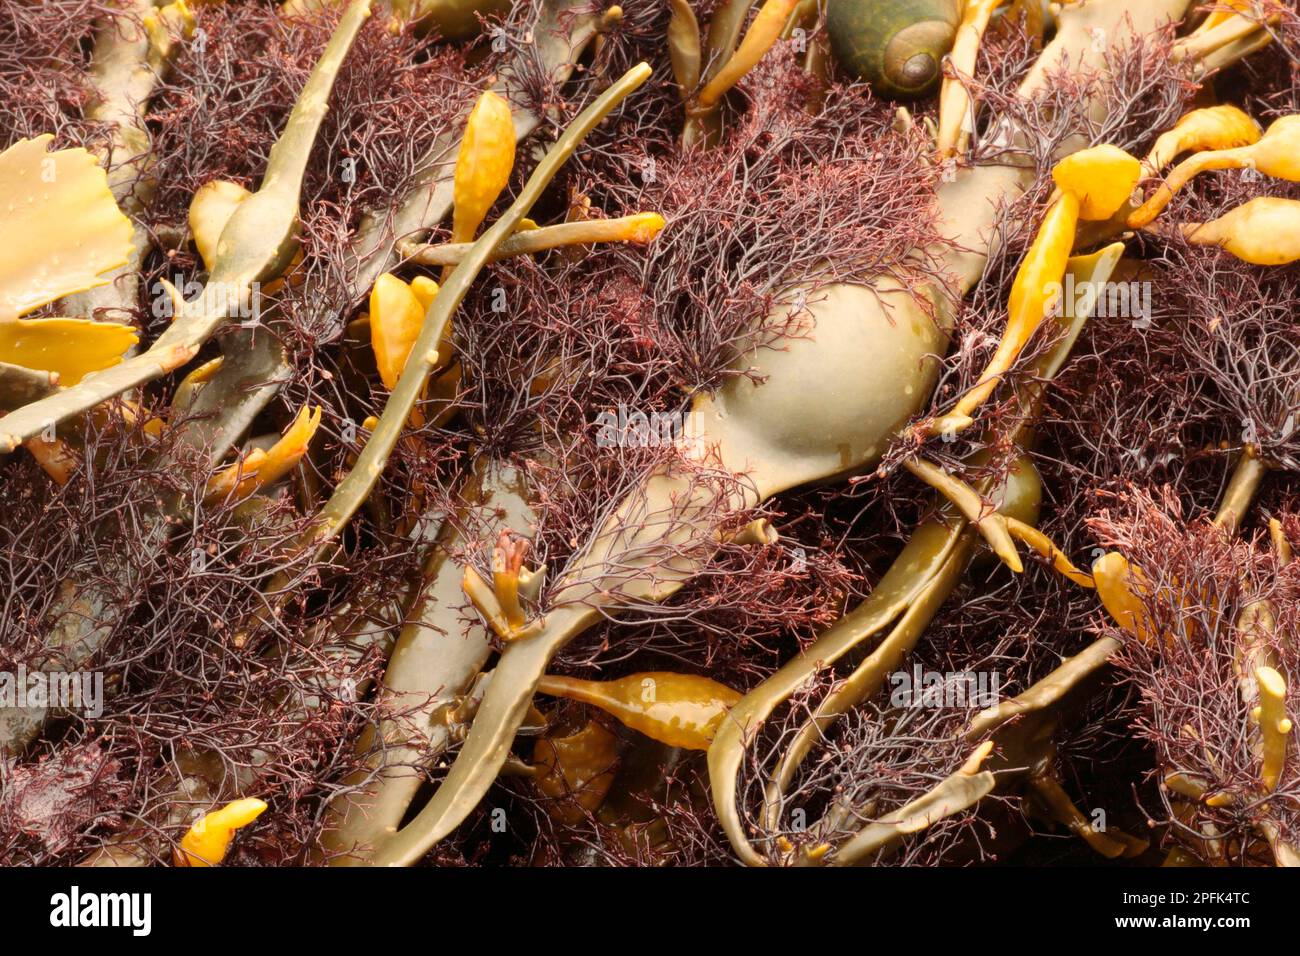 Red Seaweed (Polysiphonia lanosa) growing on Knotted Wrack (Ascophyllum nodosum), Osmington Mills, Dorset, England, United Kingdom Stock Photo